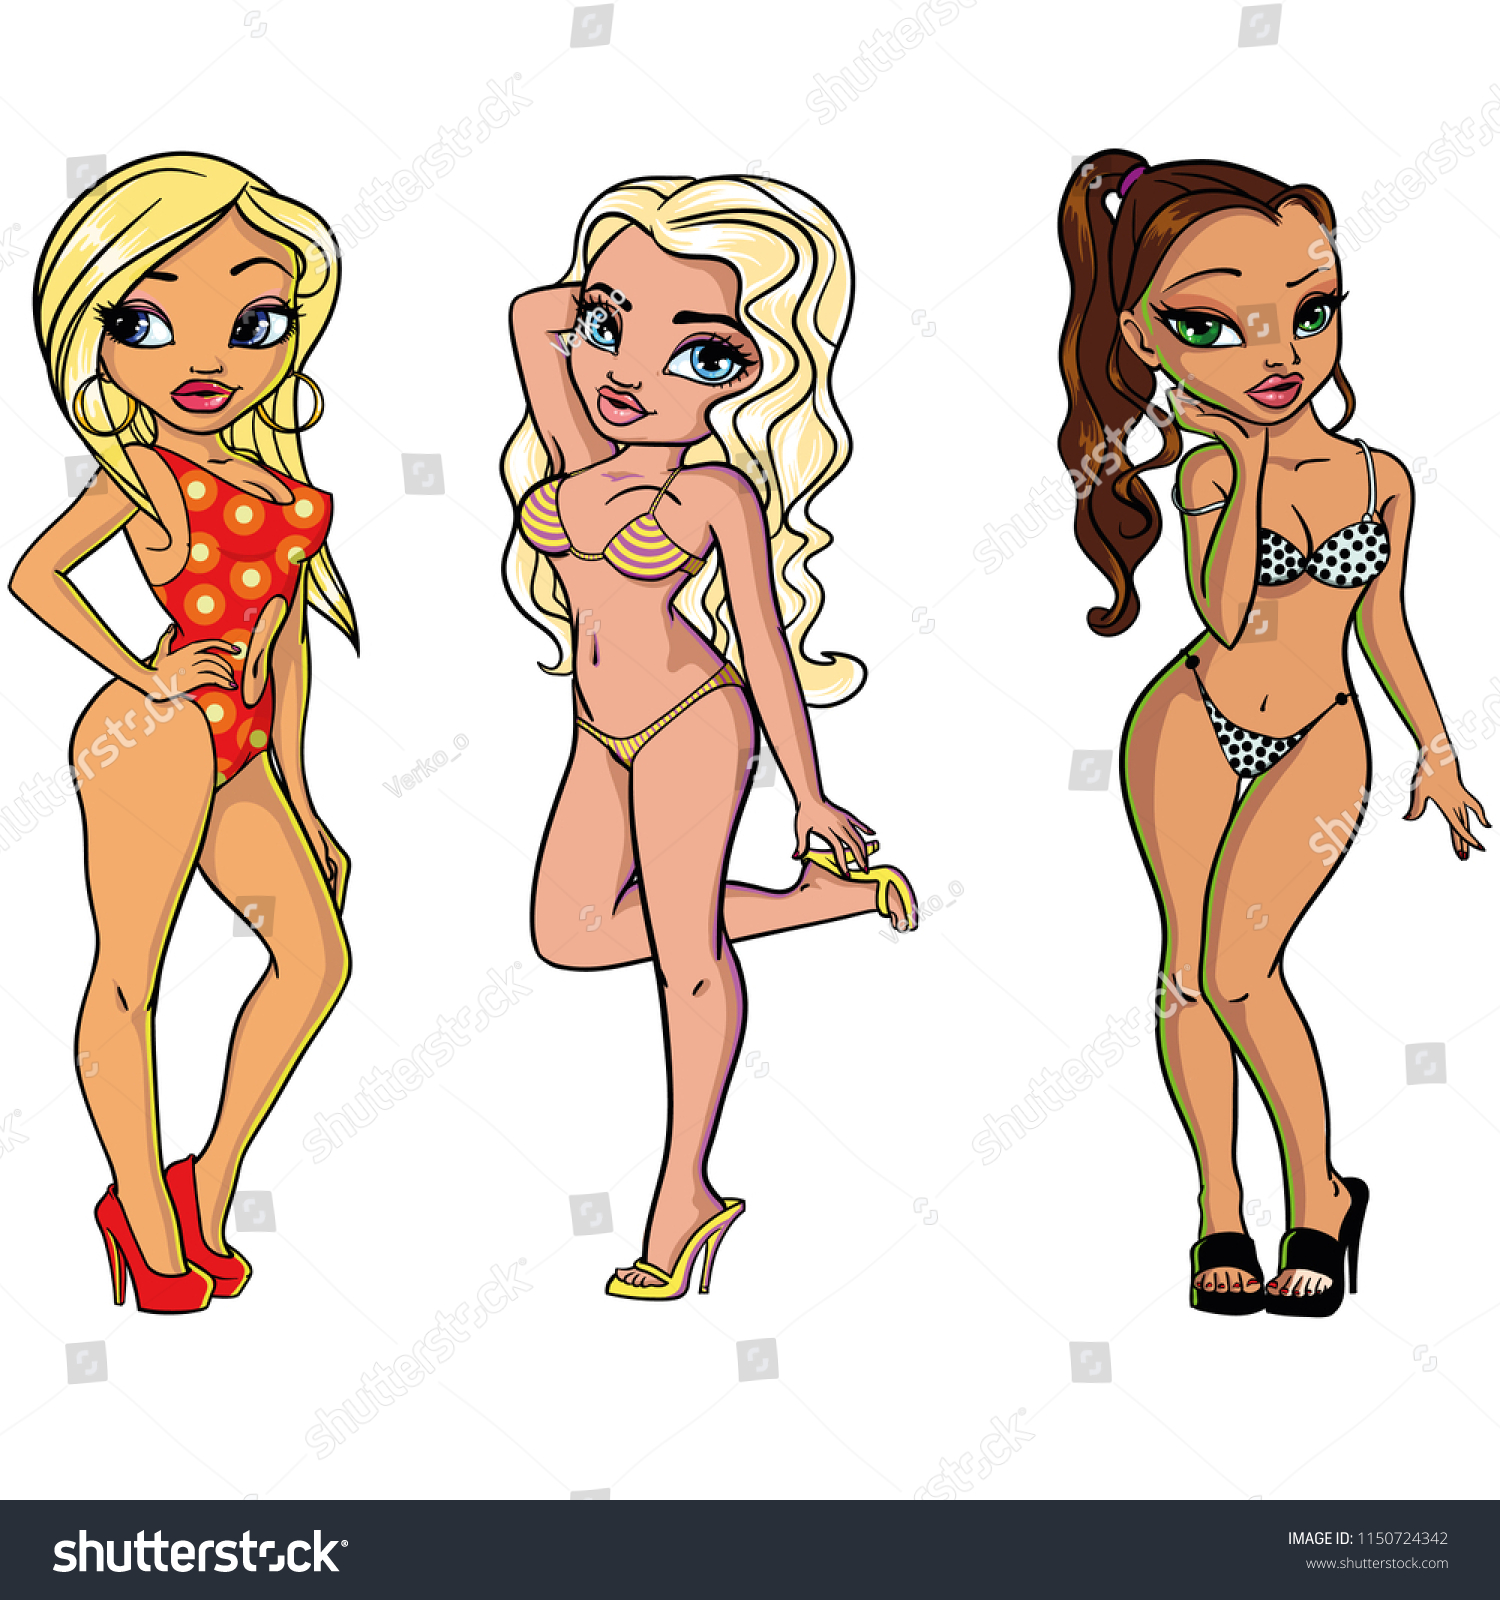 Hot Cartoon Girls